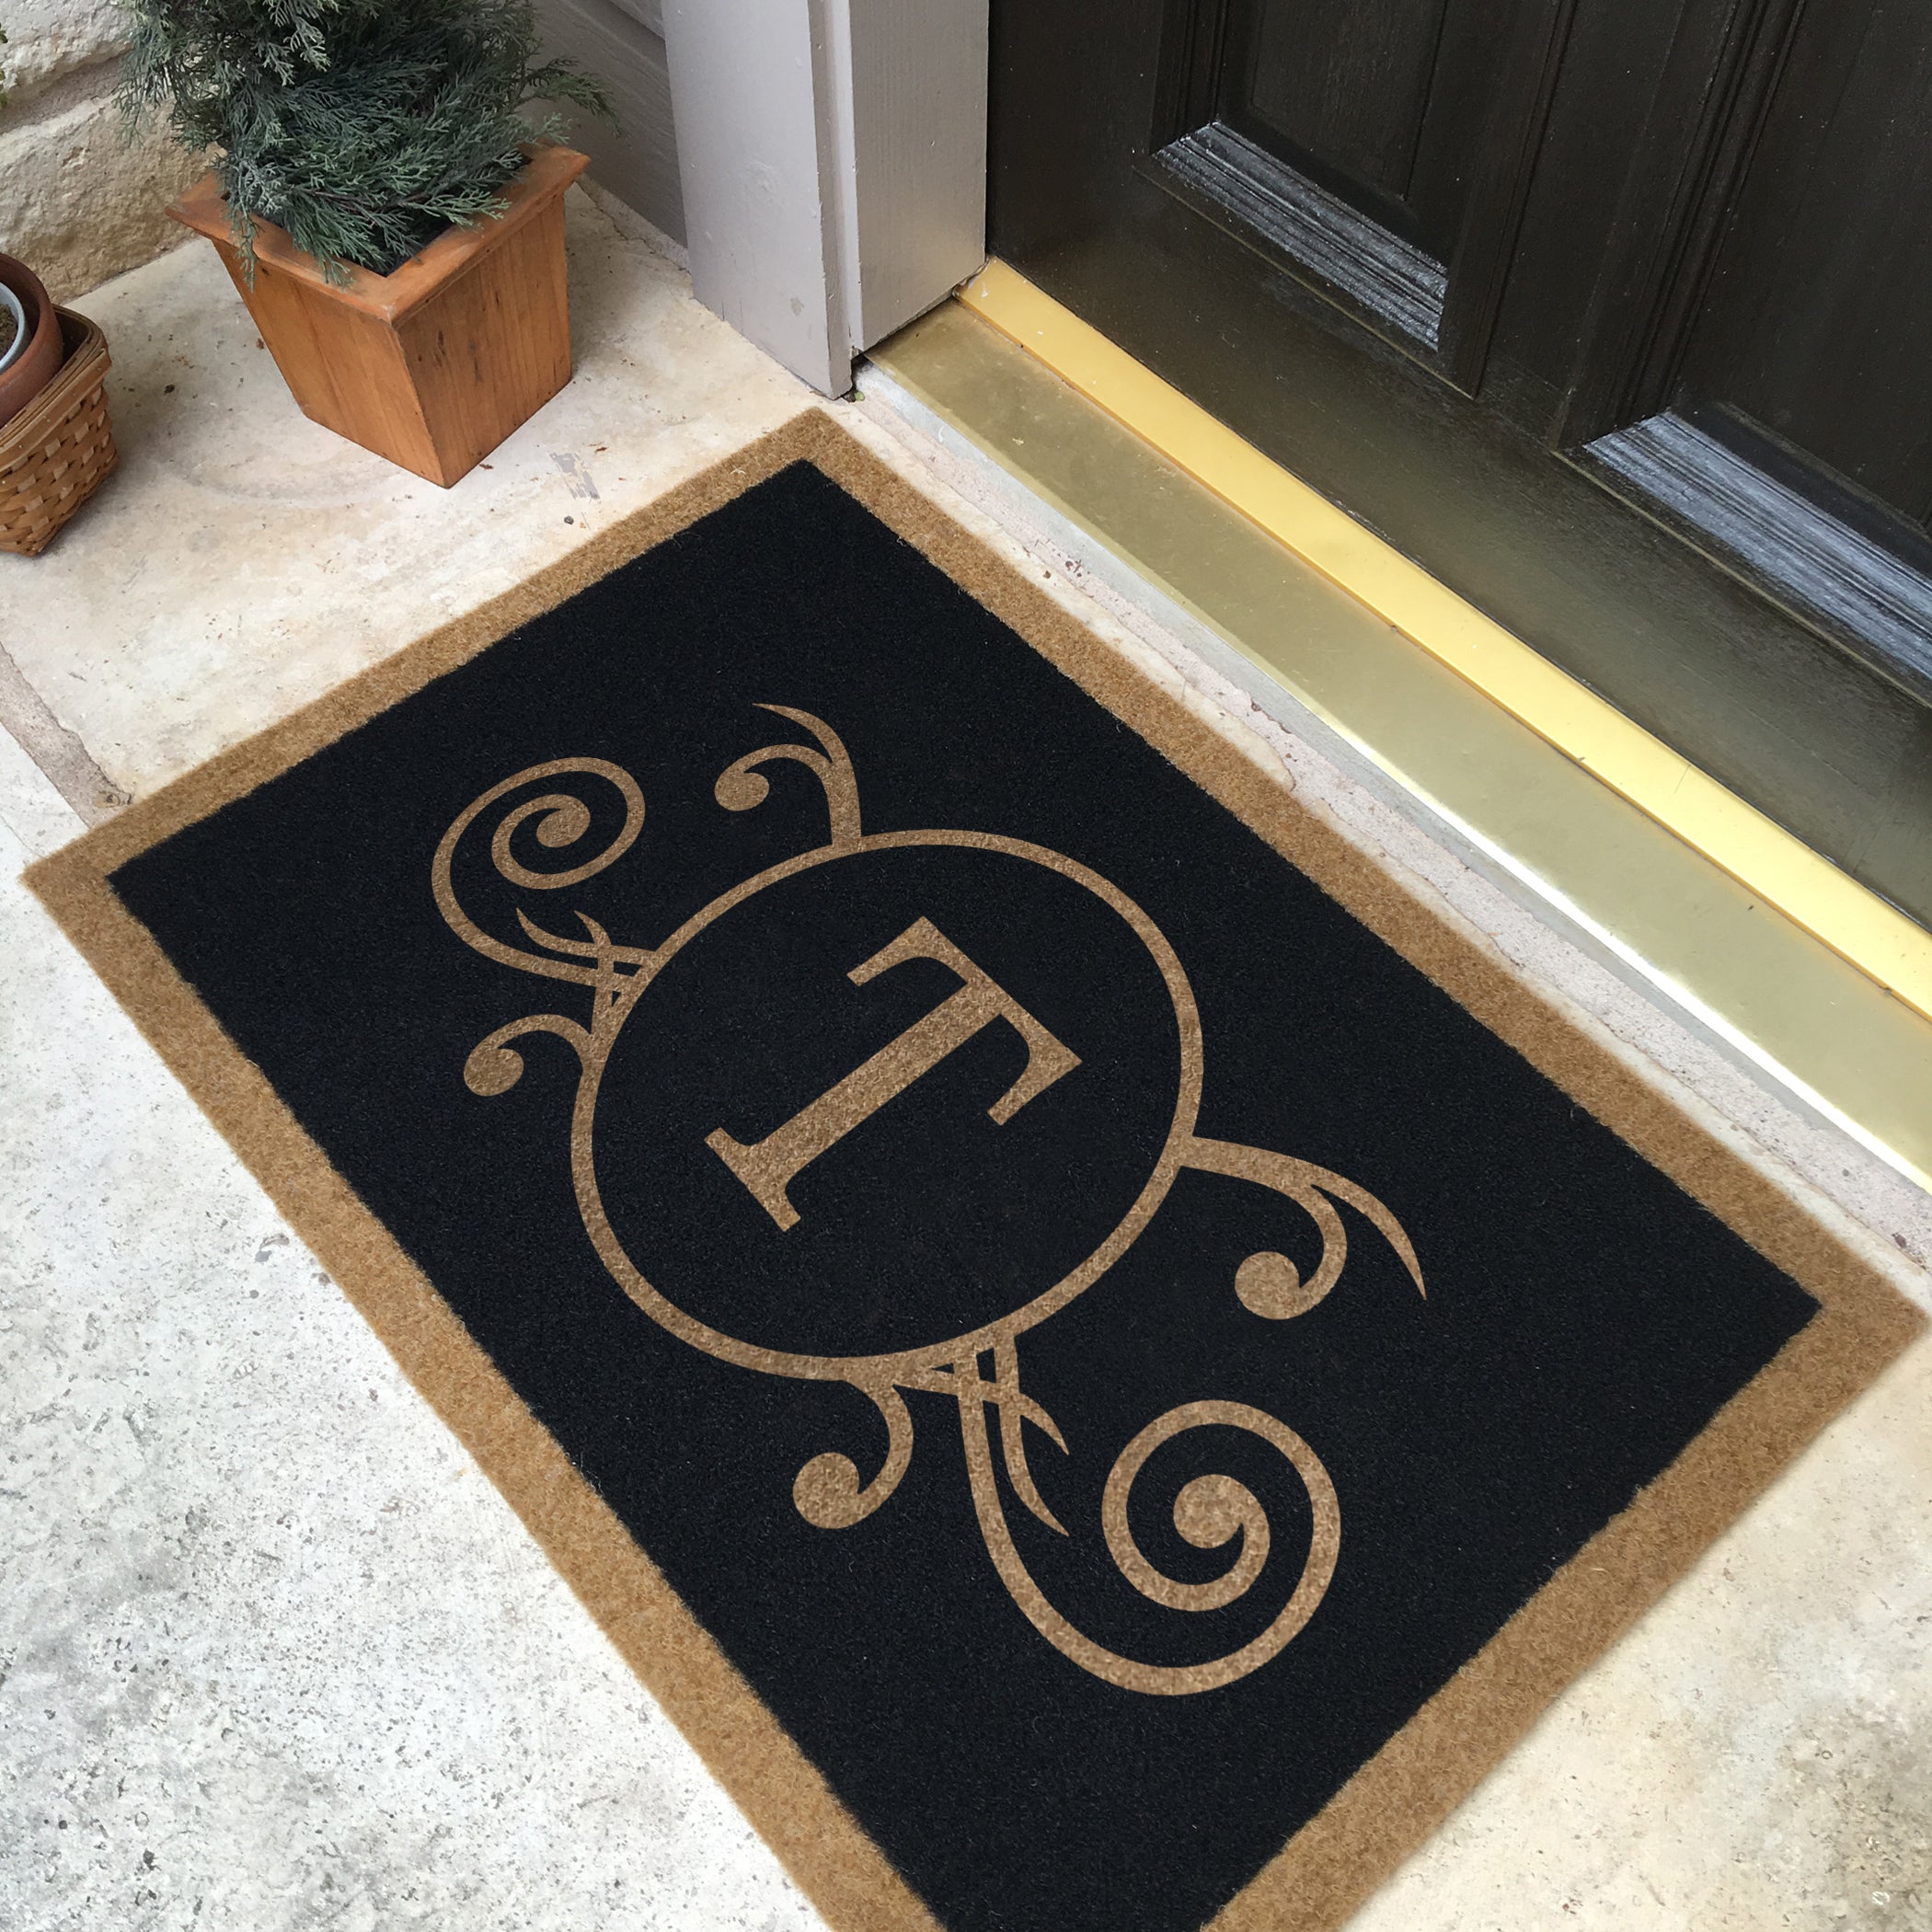 Doormat, Welcome Mats & Entry Mats